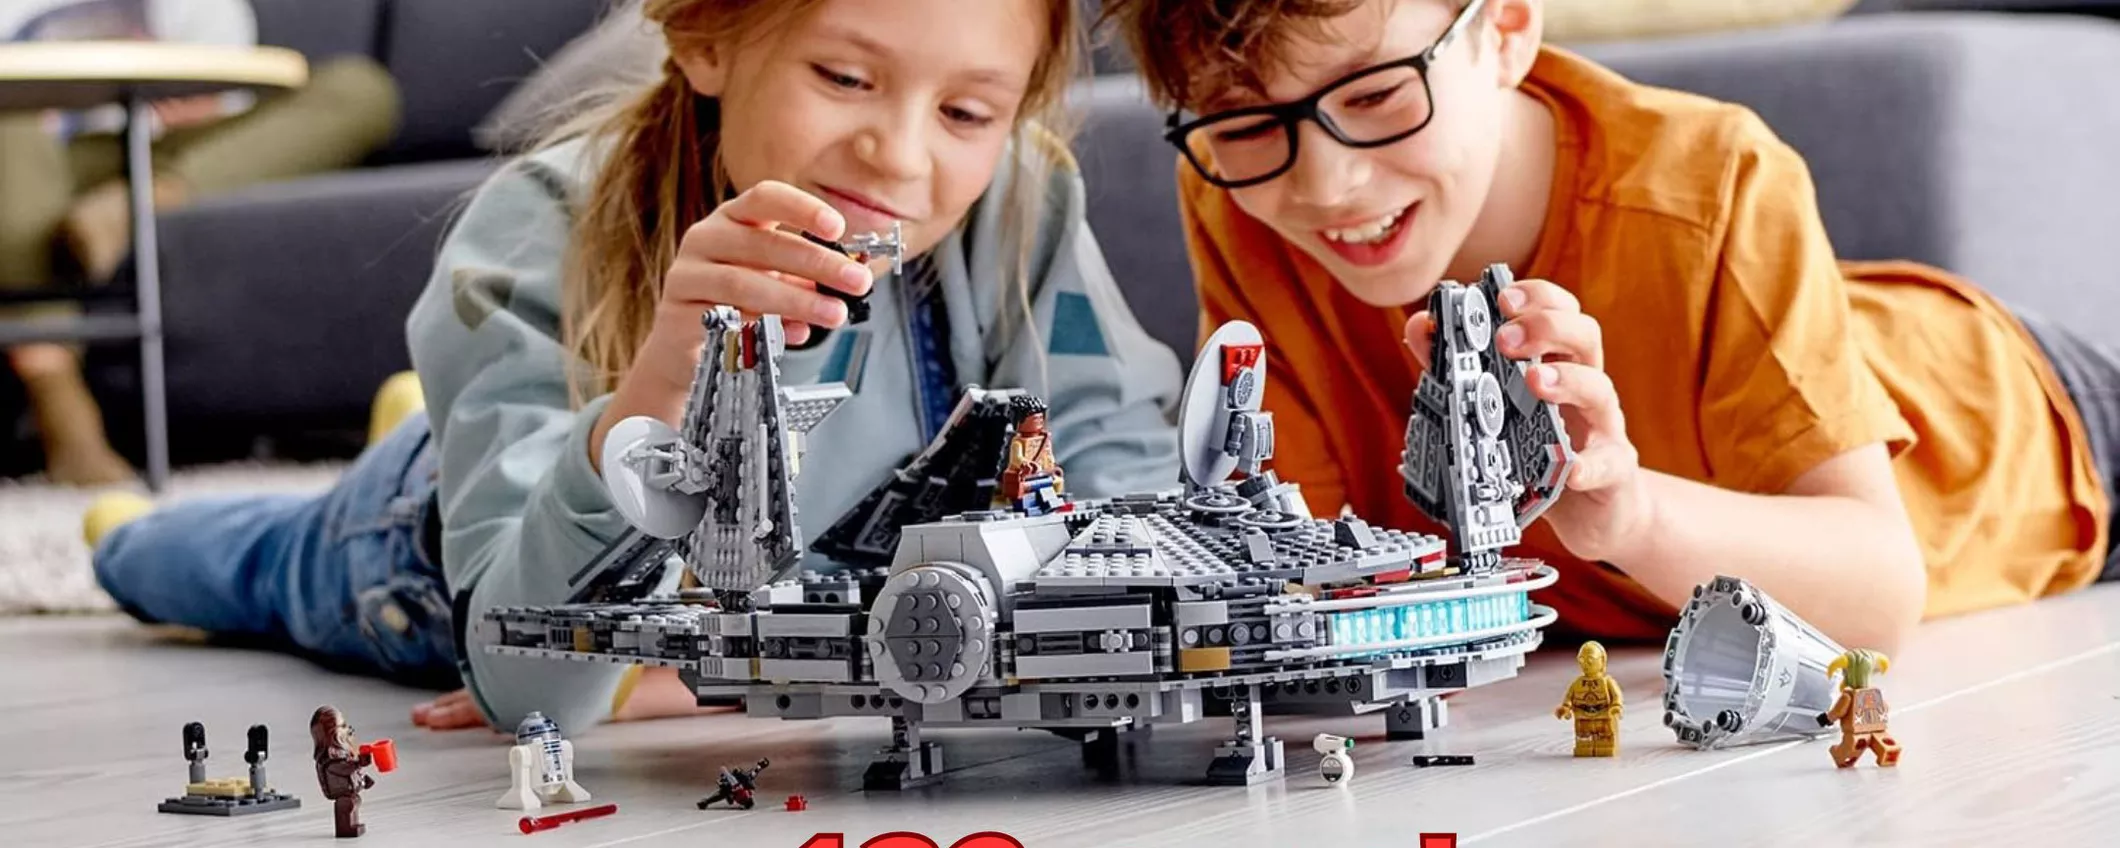 Salpa sulla mitica Millennium Falcon di Star Wars LEGO grazie a questa OFFERTA!